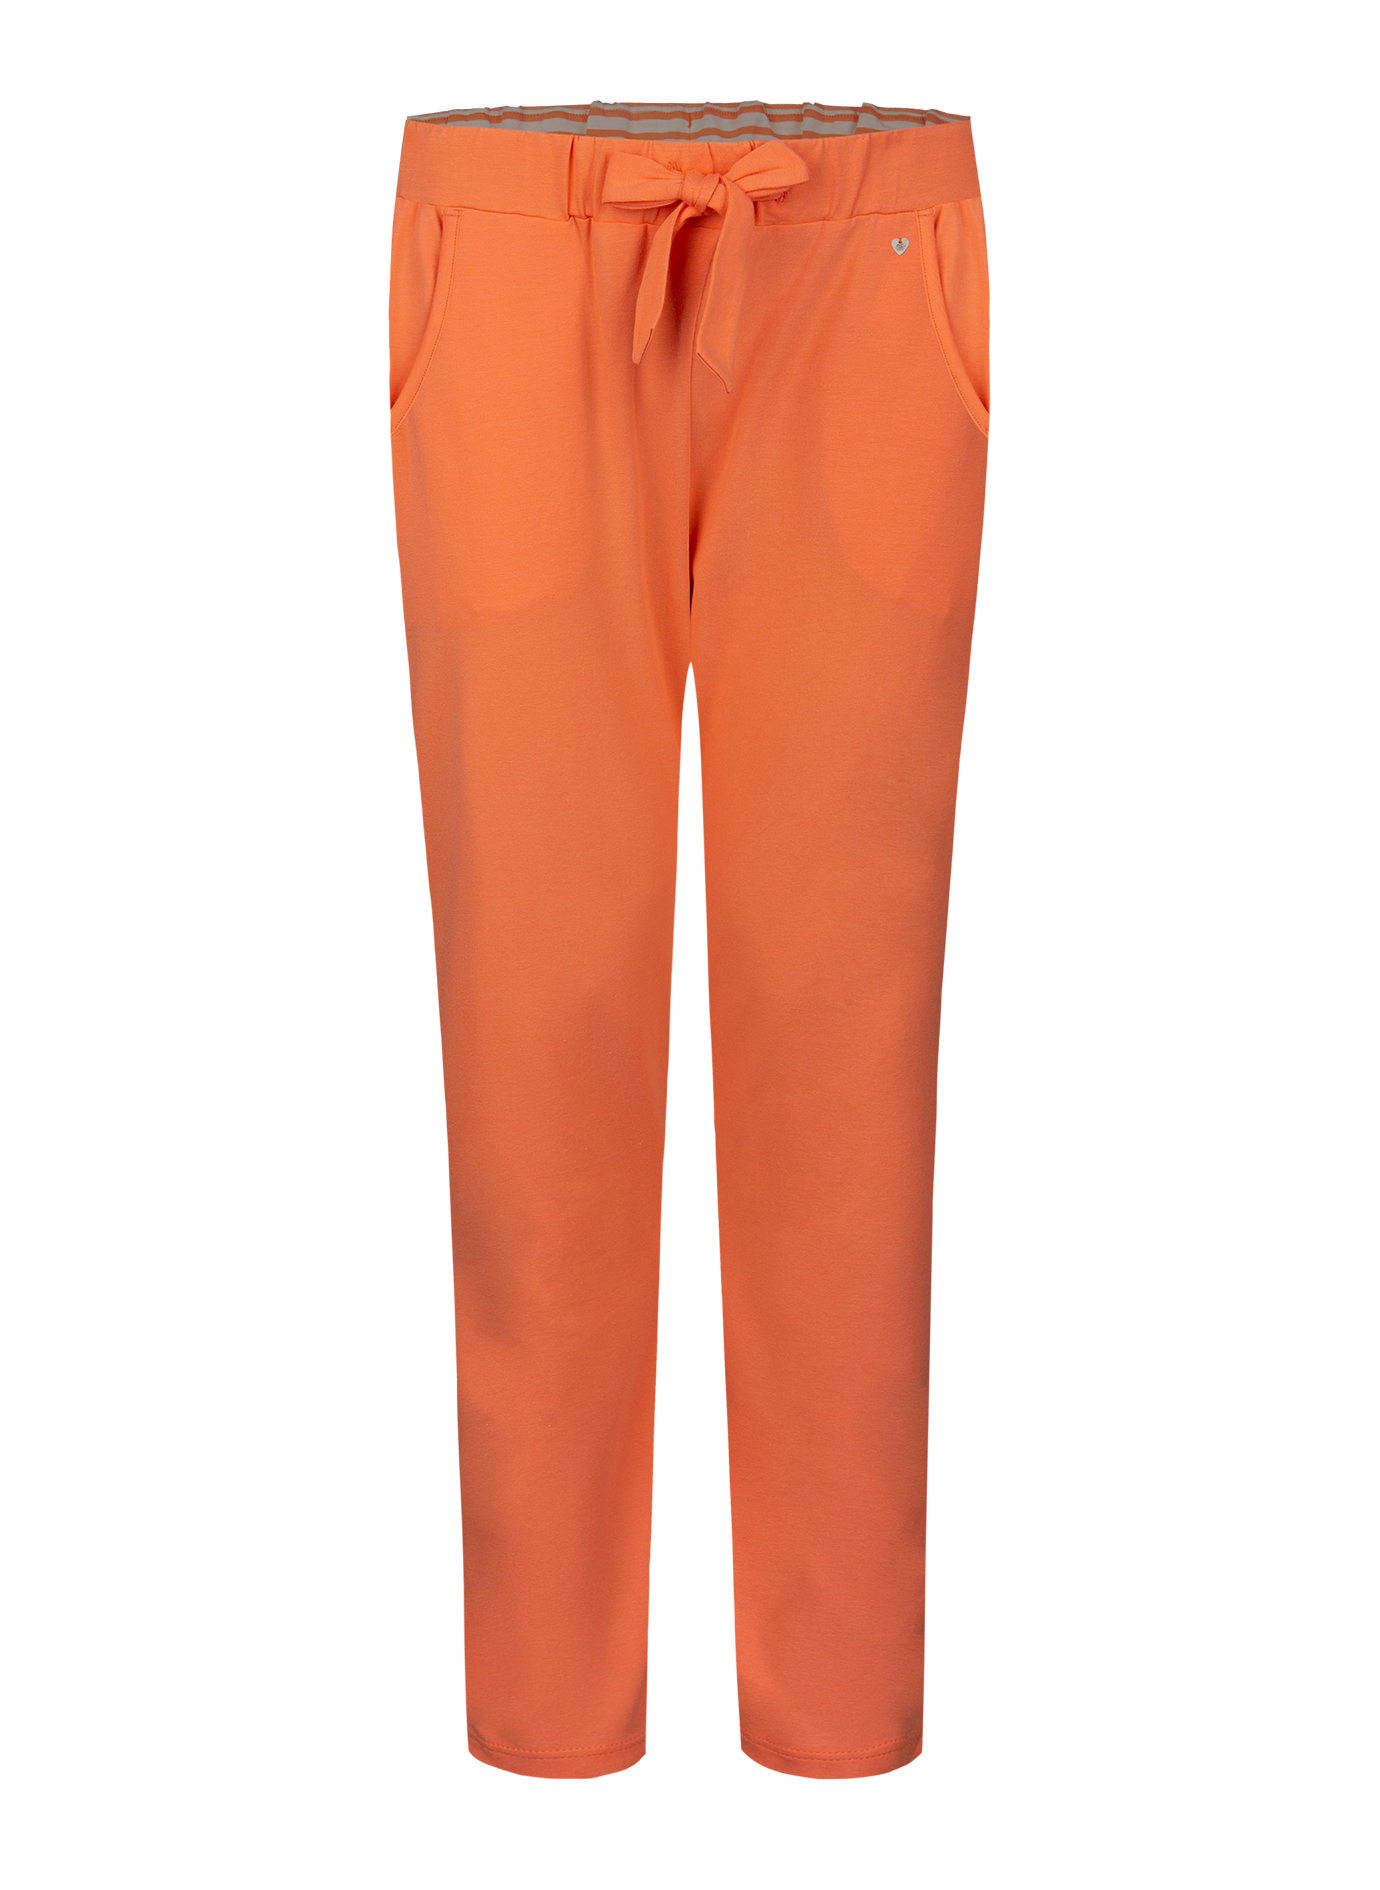 Damen-Loungehose Orange